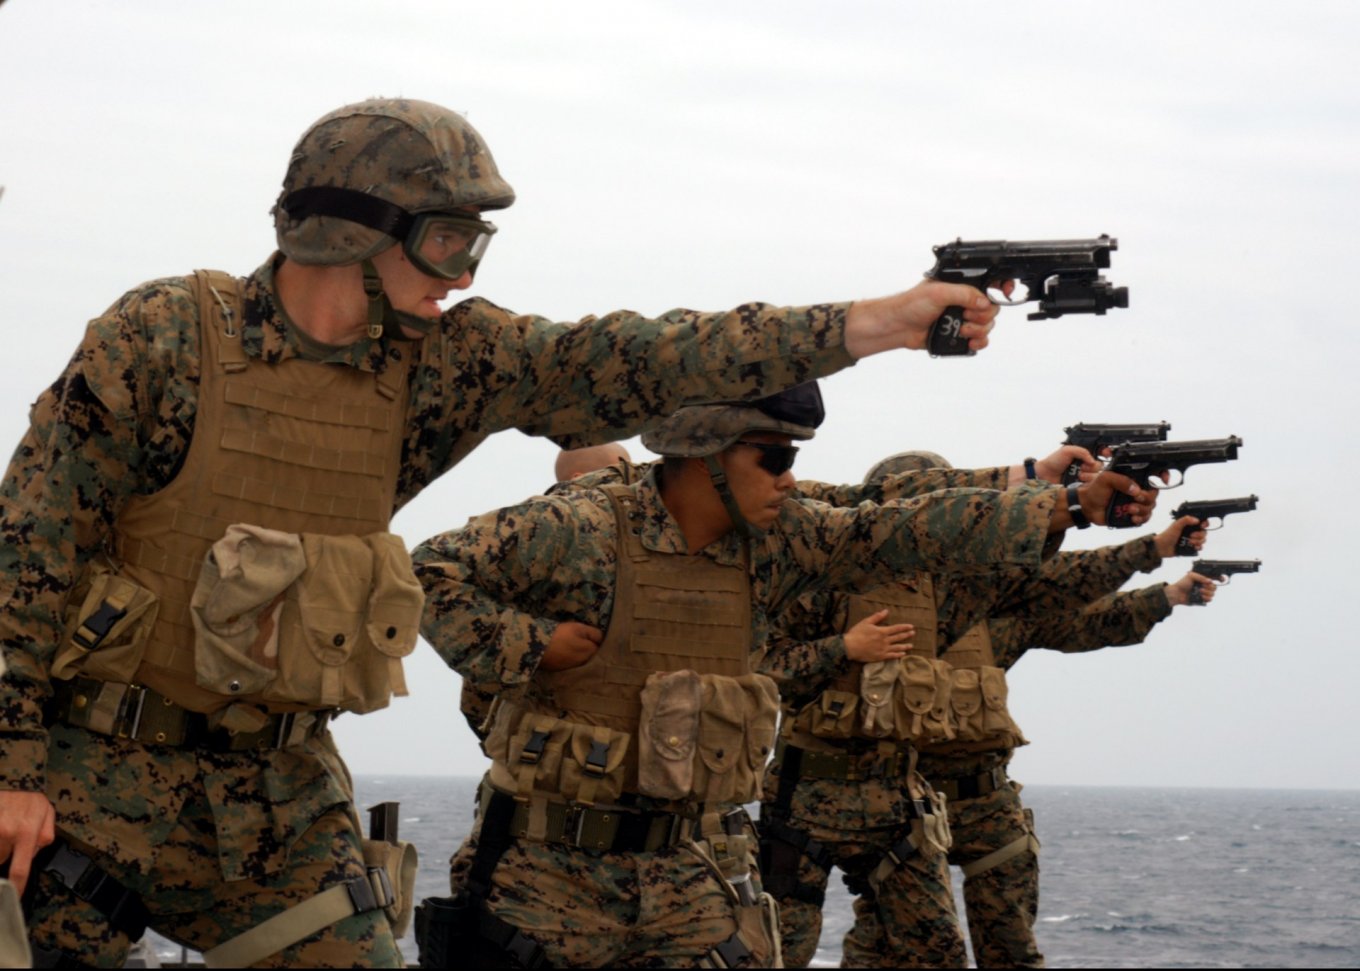 American marines with Beretta M9 (Beretta 92FS)